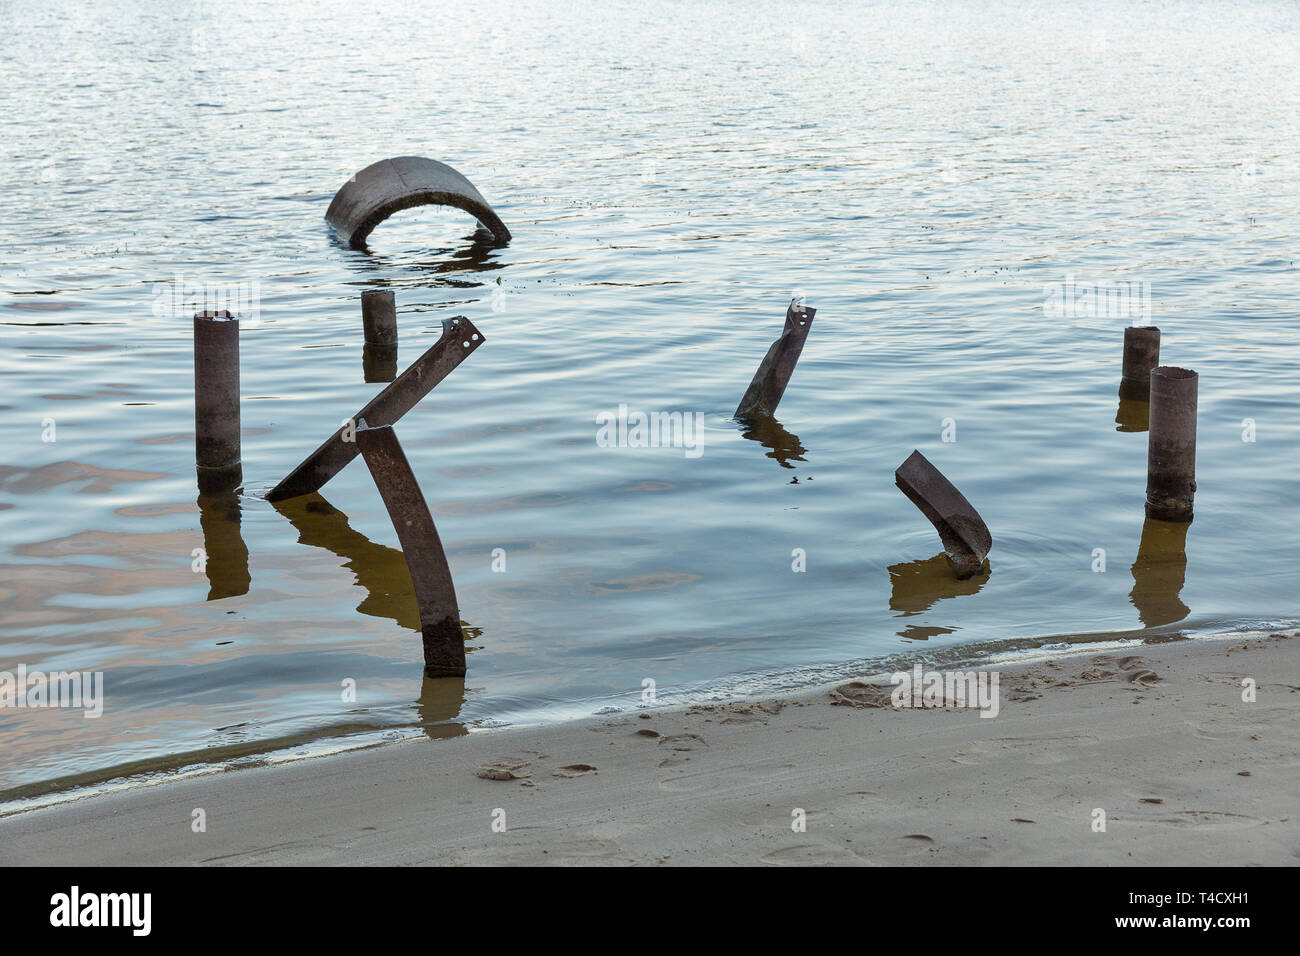 Constructions Post apocalypse dans l'eau. Côte de Sable sur l'île Khortytsia Dniepr en été, de l'Ukraine. Banque D'Images